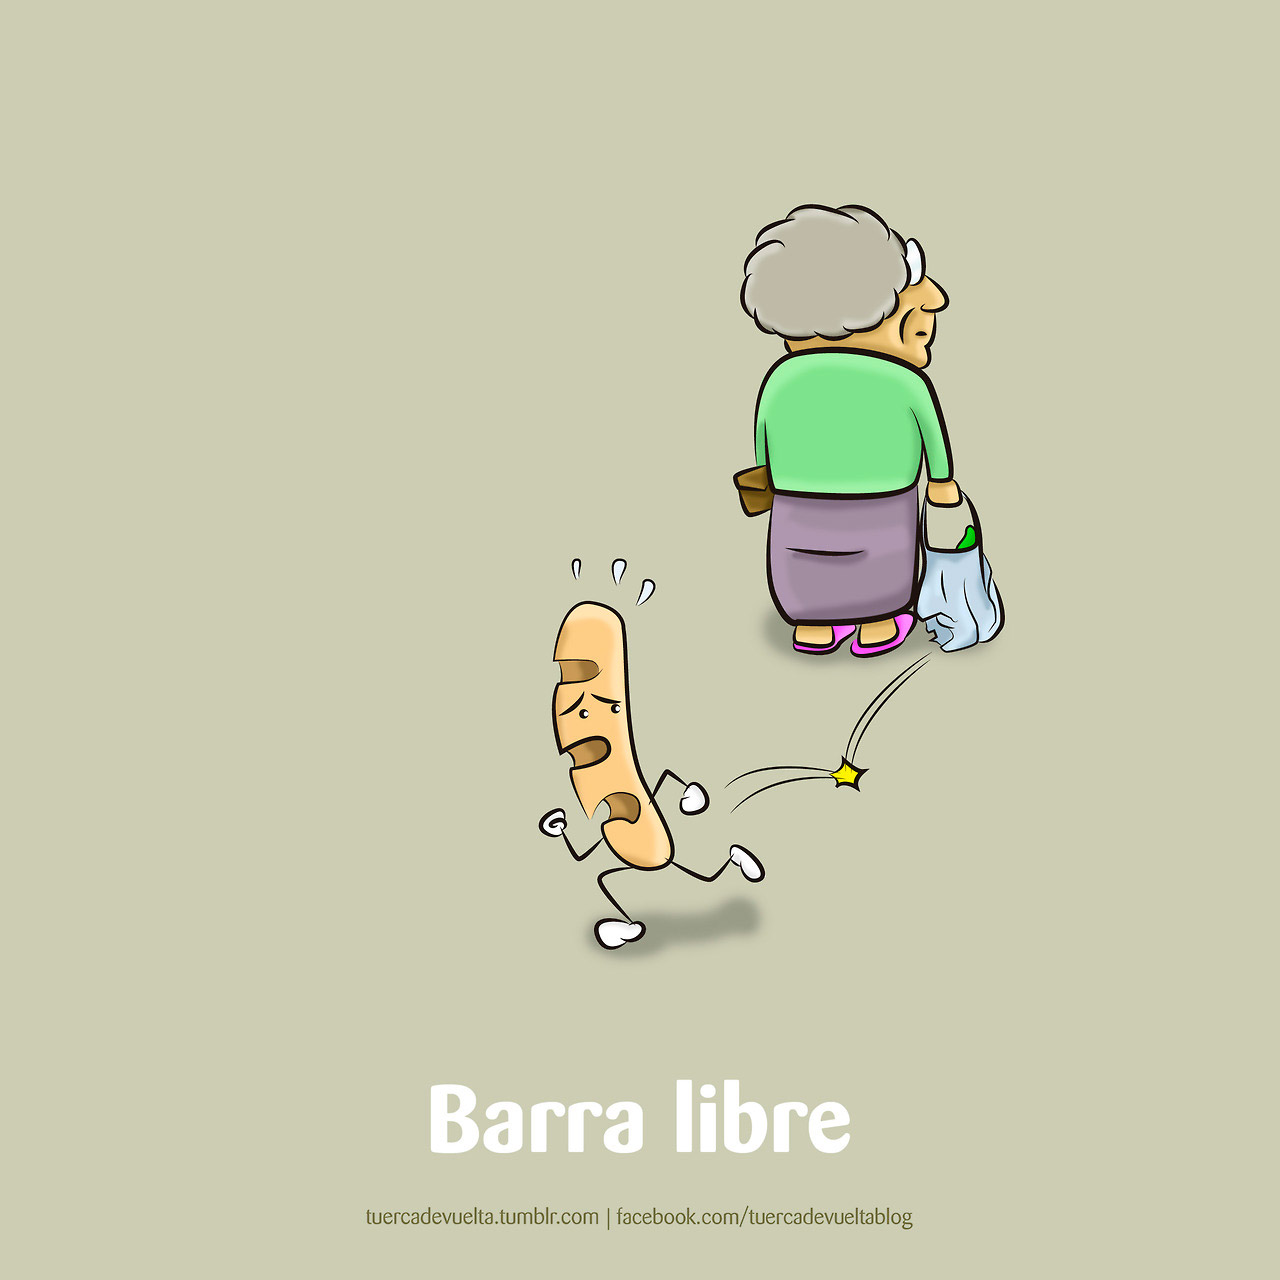 Barra libre